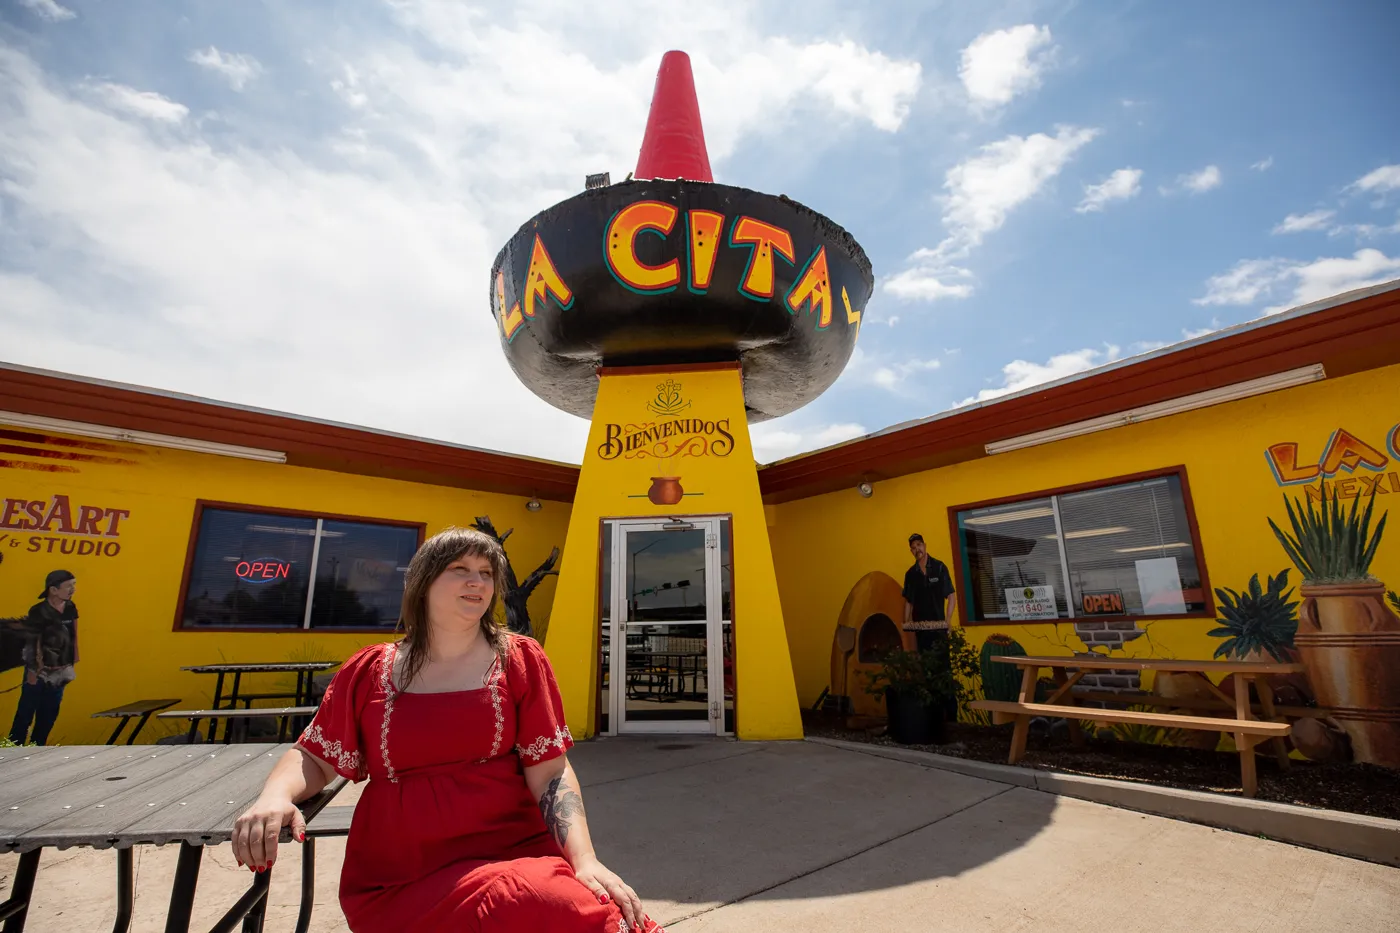 Giant Sombrero at La Cita Restaurant in Tucumcari, New Mexico - Route 66 Roadside Attraction